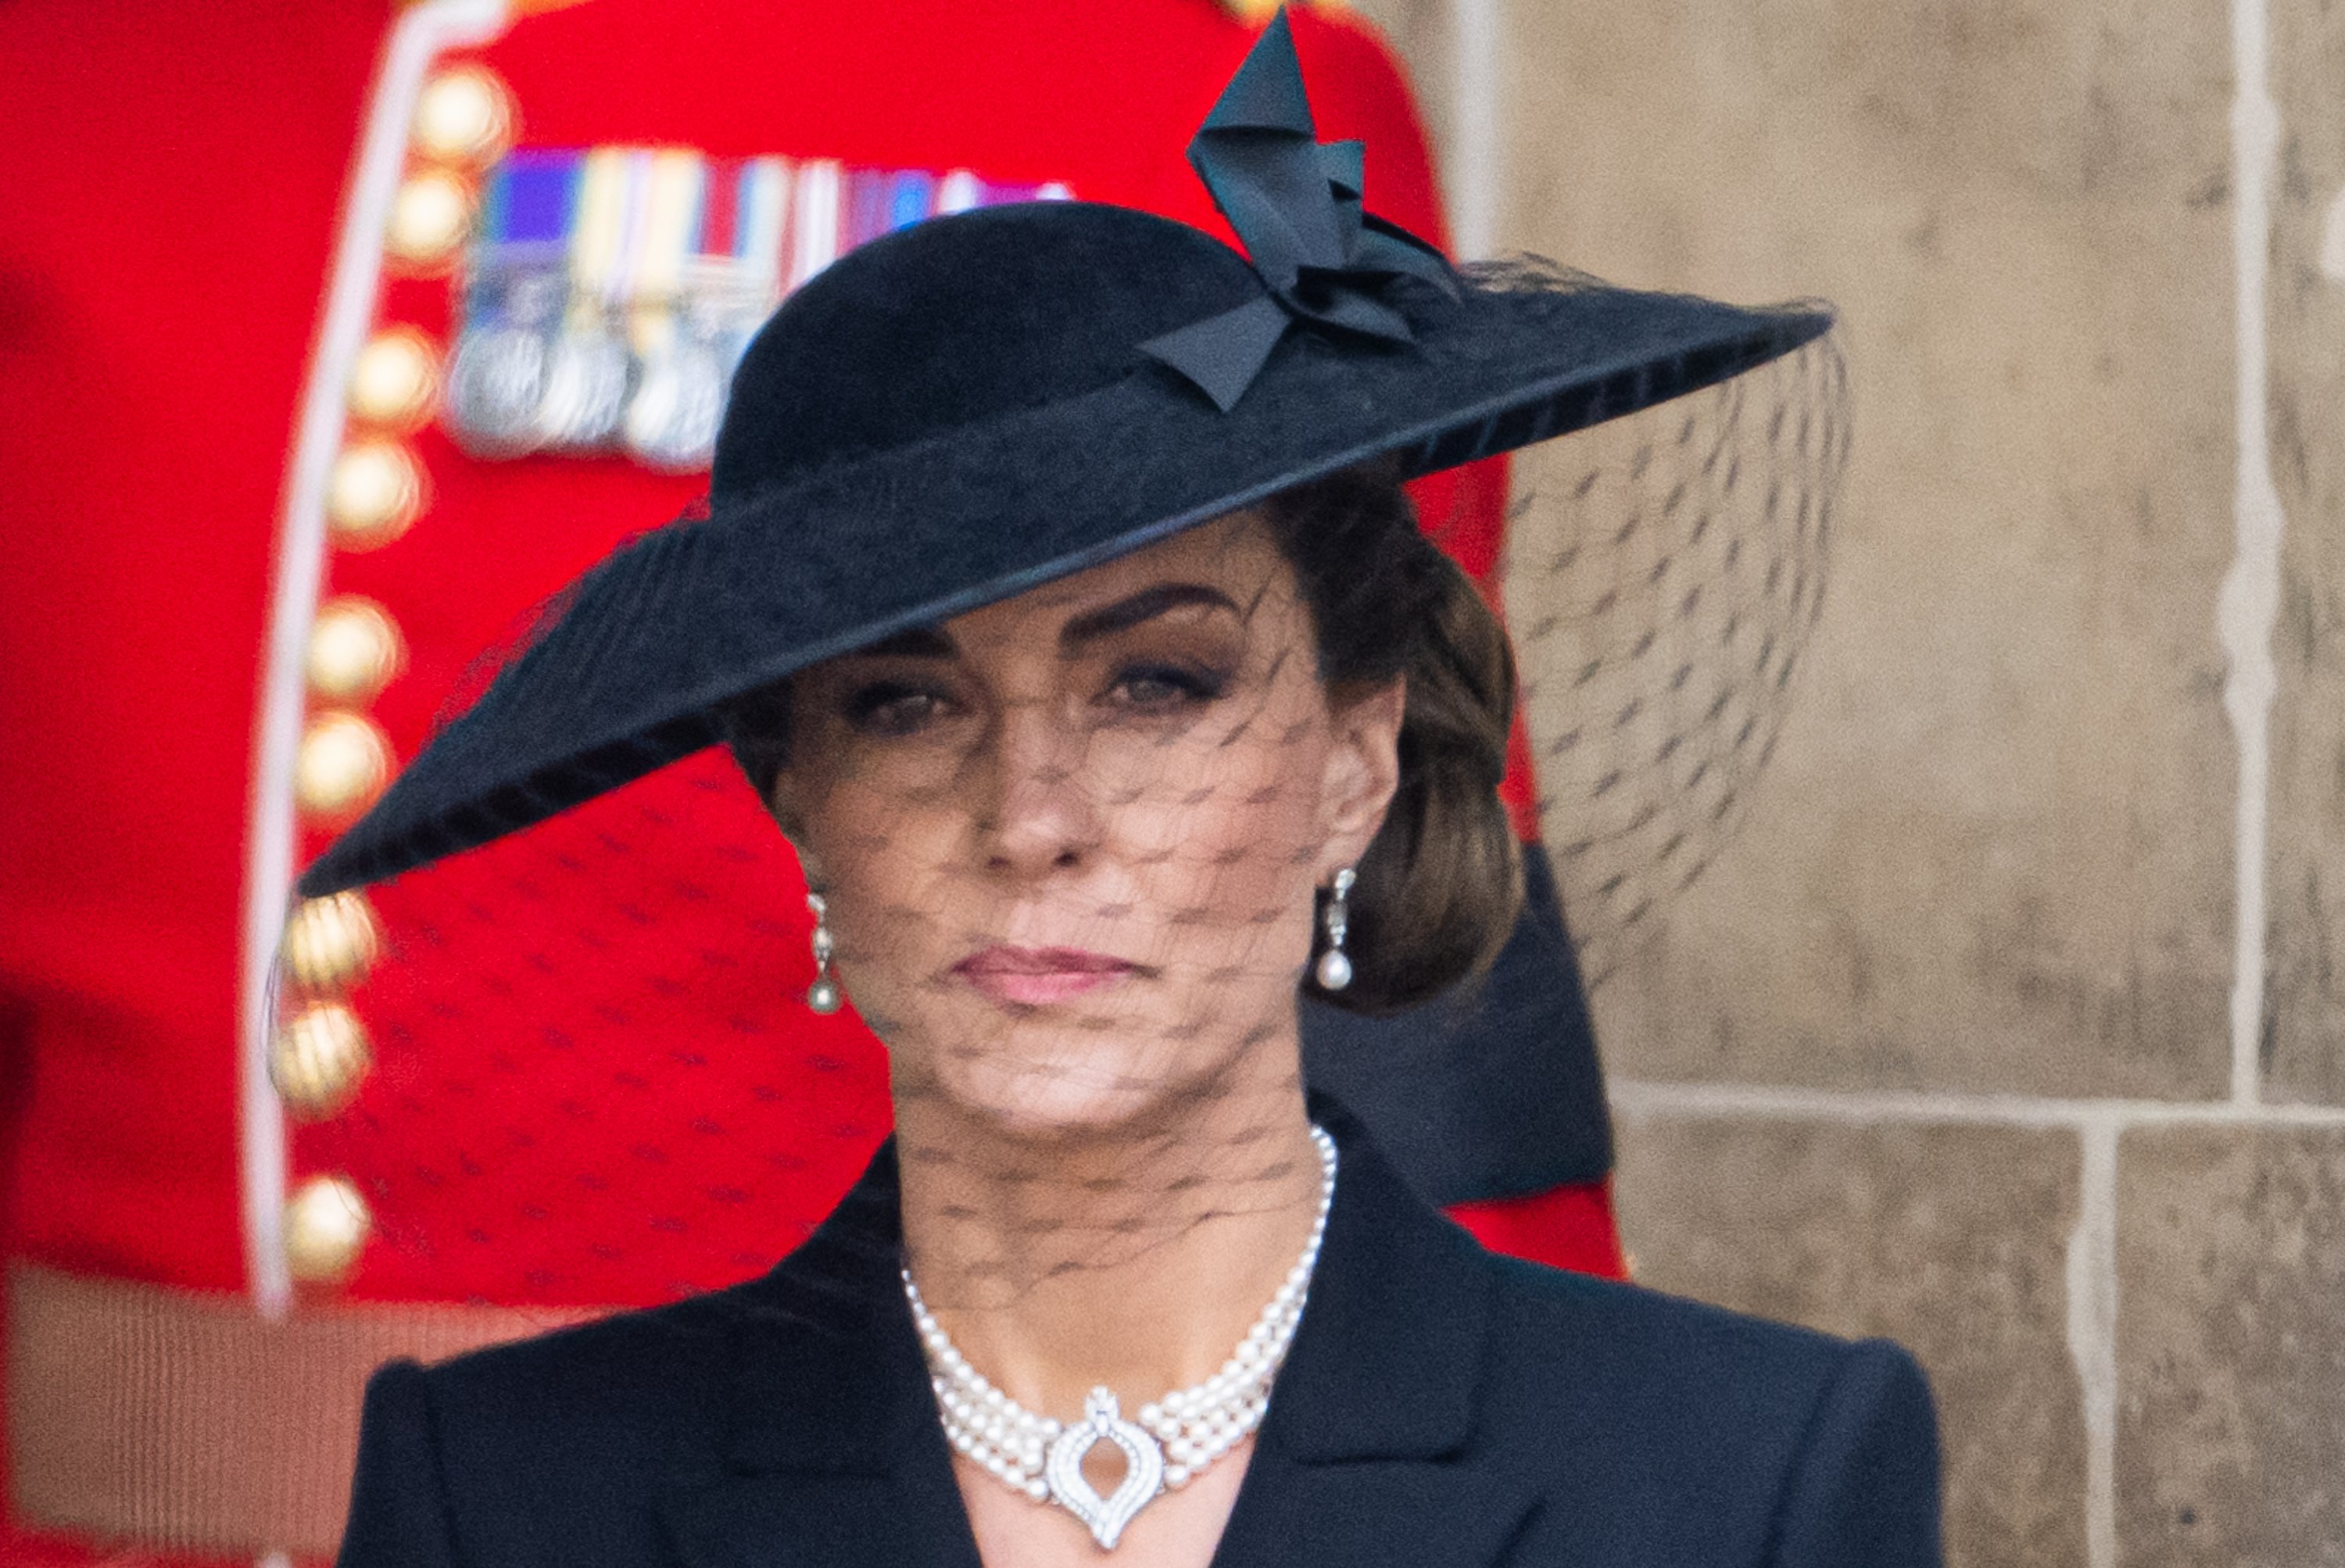 Kate, princesa de Gales, durante el funeral de estado de la reina Elizabeth II en la Abadía de Westminster el 19 de septiembre de 2022 en Londres, Inglaterra. | Foto: Getty Images